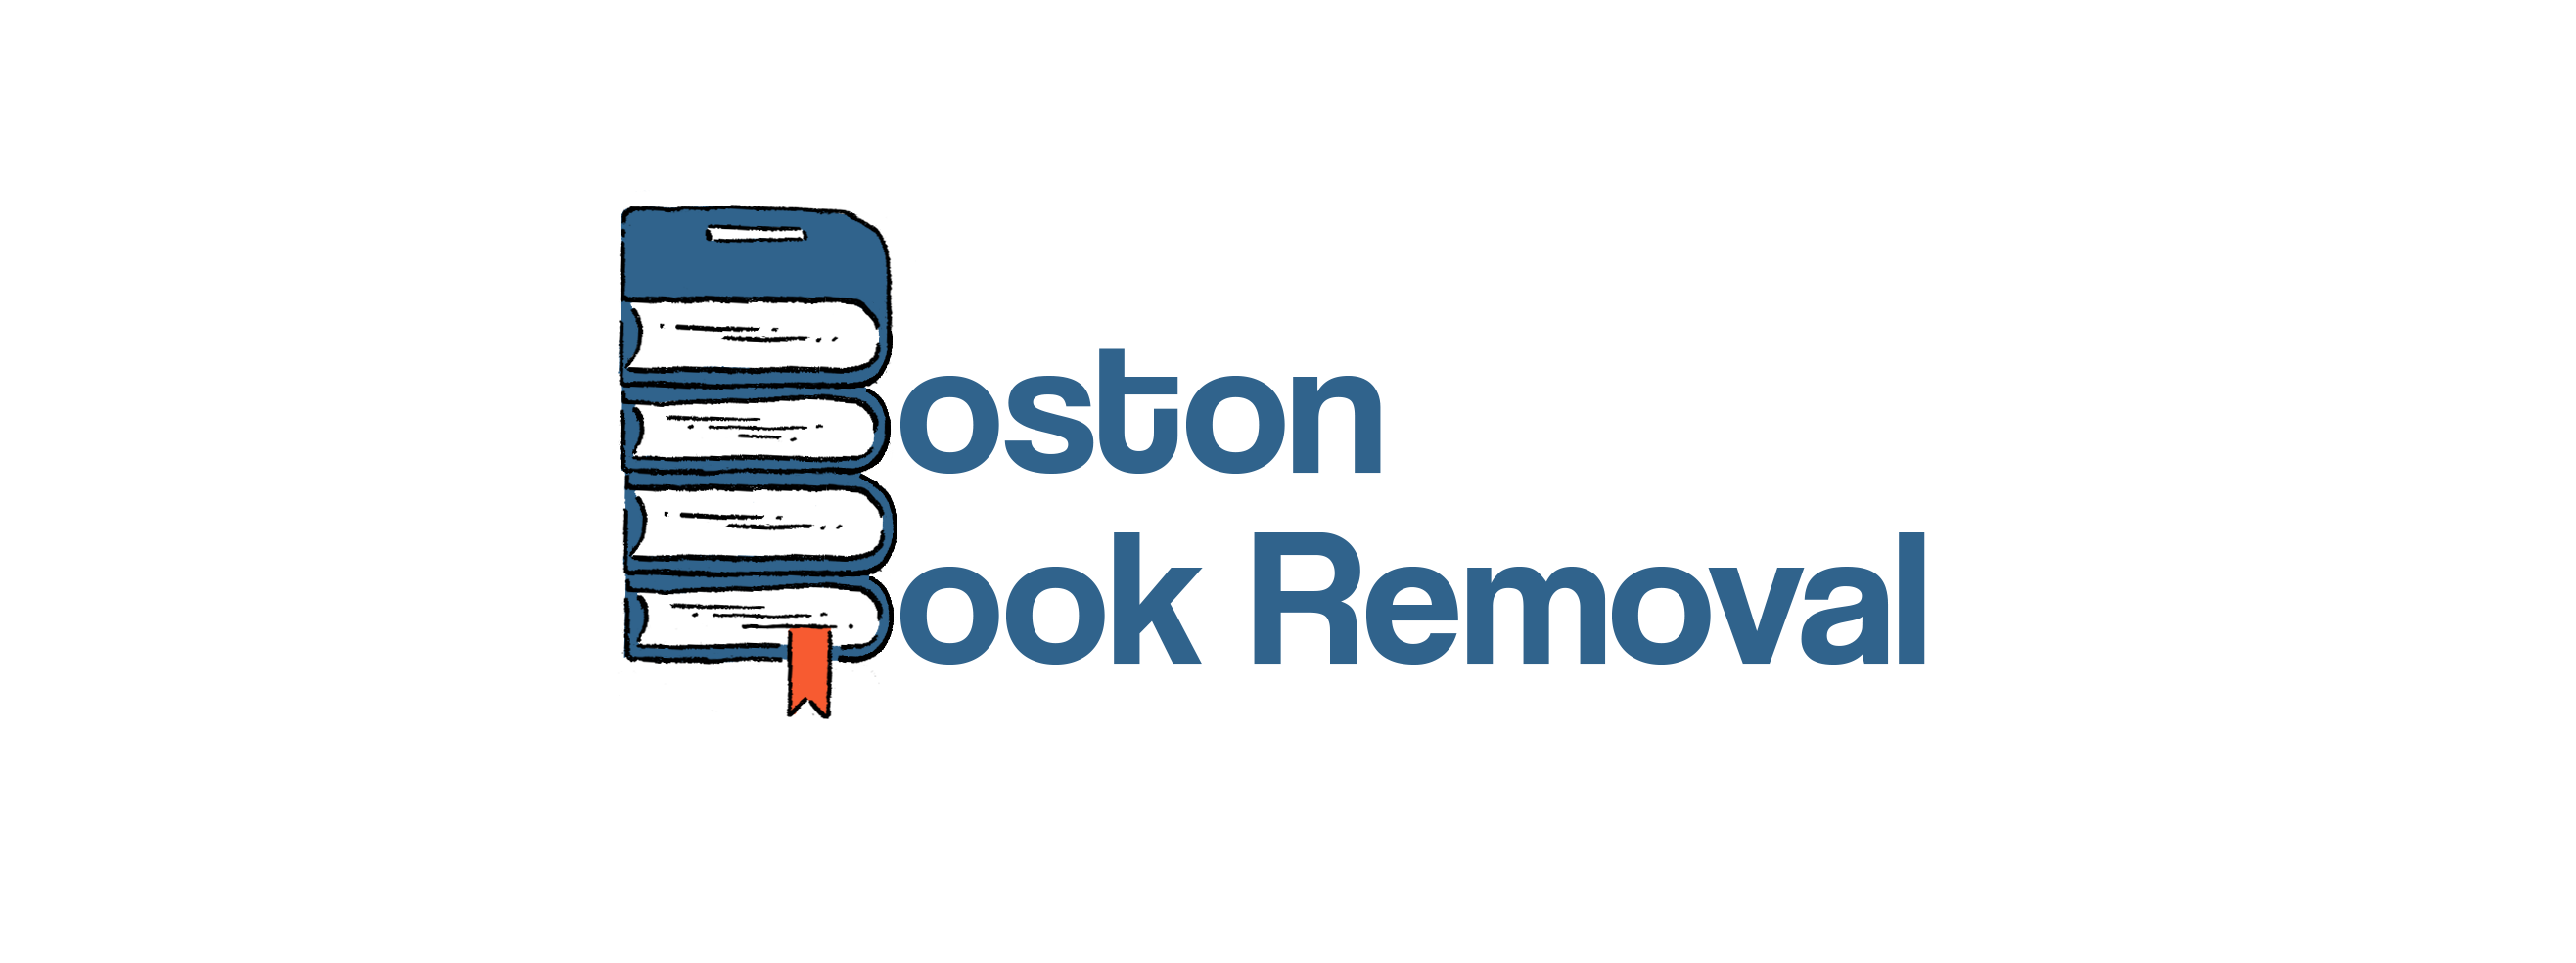 Boston Book Removal